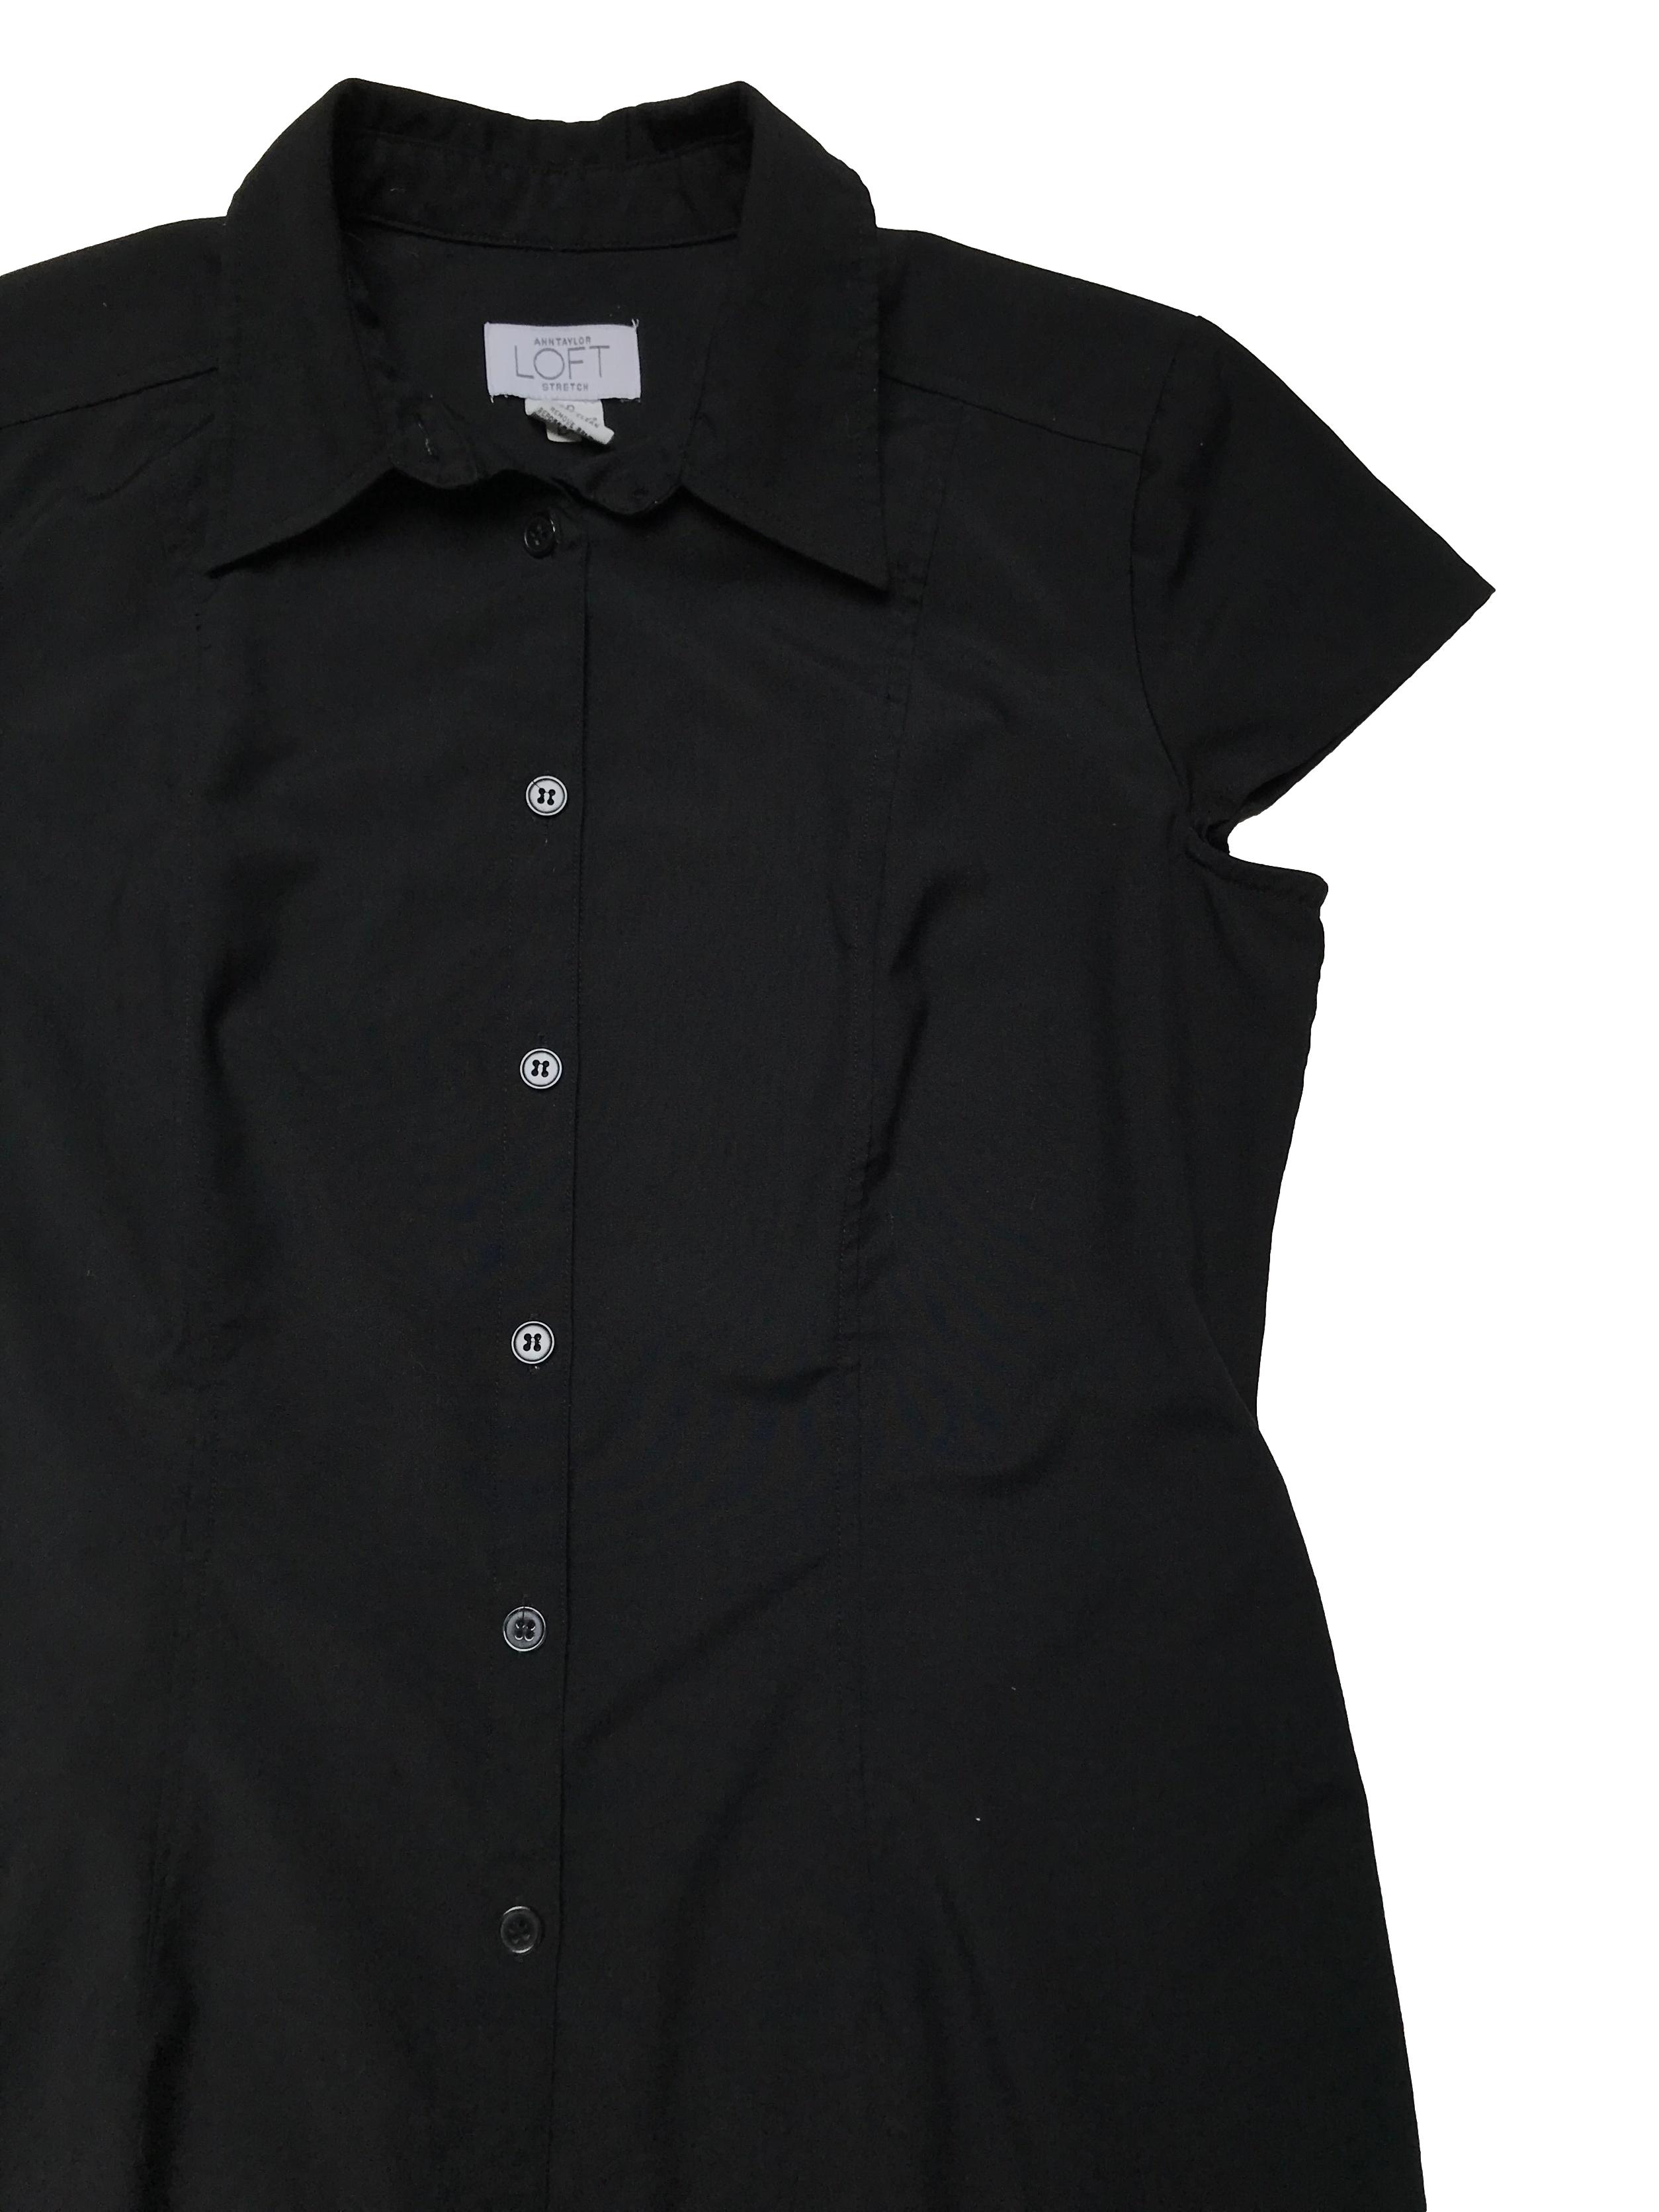 Vestido largo Loft camisero, negro de tela plana tipo camisa, con pinzas delanteras y traseras. Busto 102cm Largo 118cm